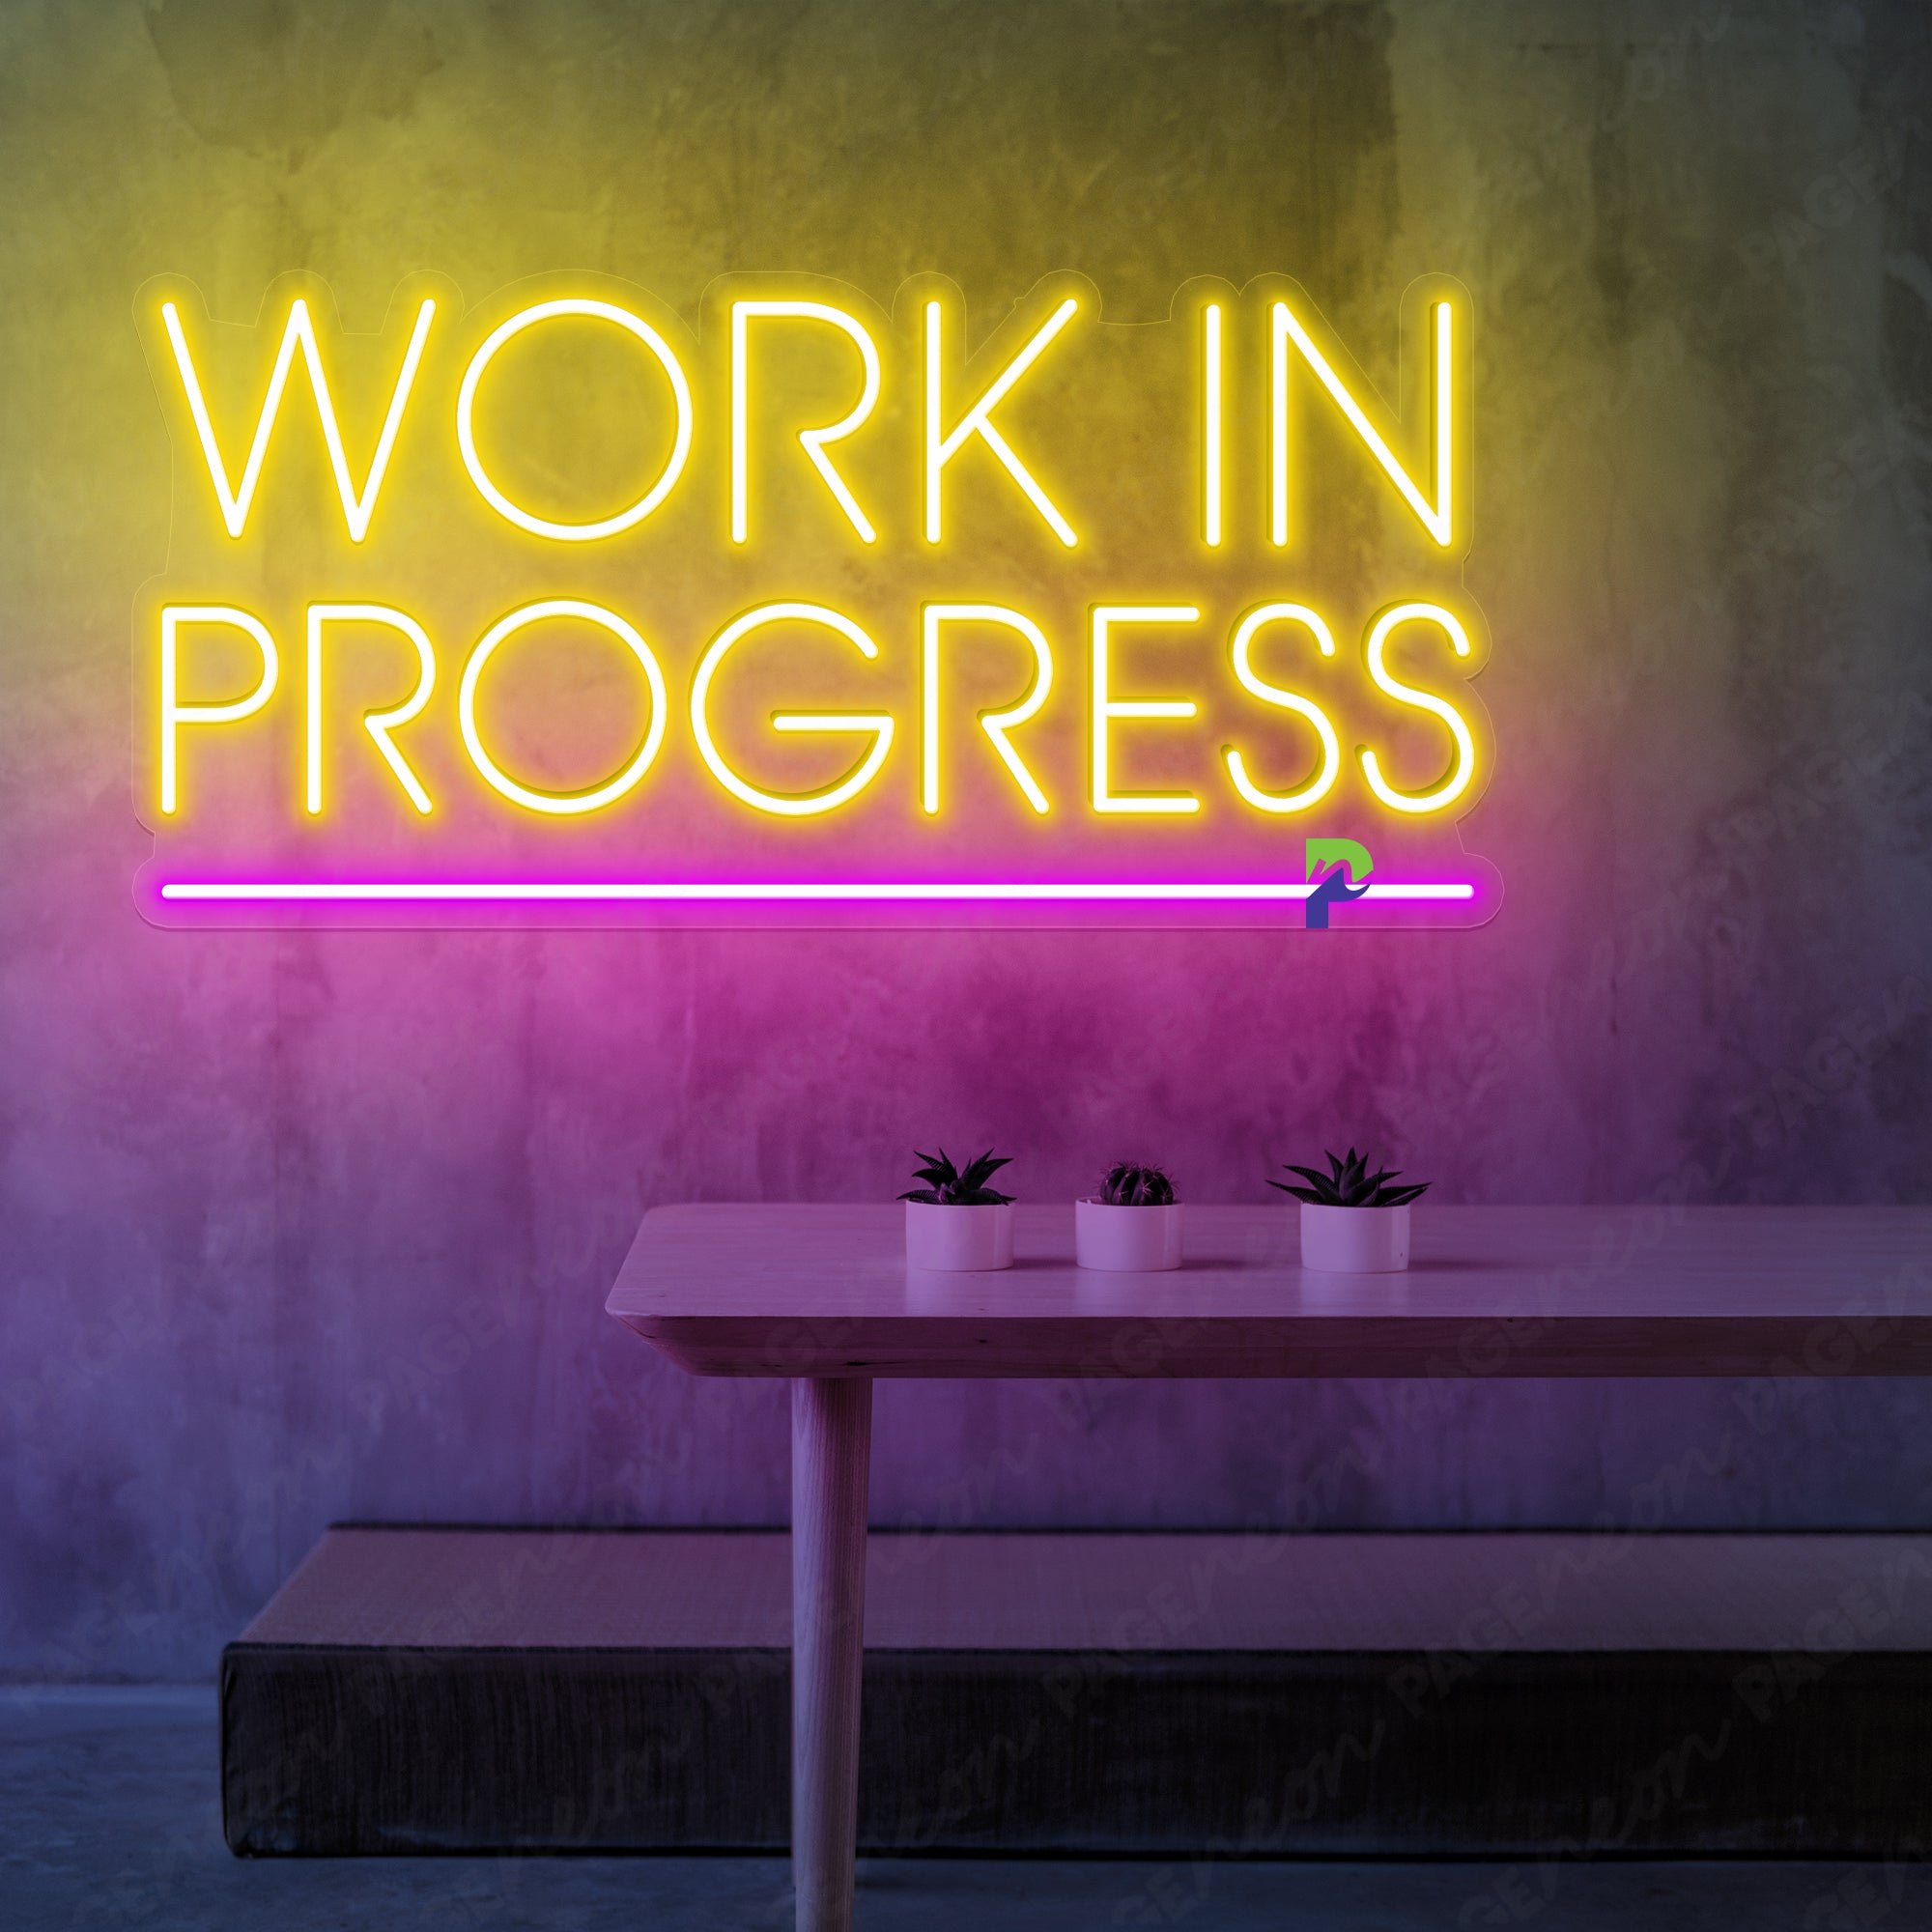 Work In Progress Neon Sign Led Light For Business